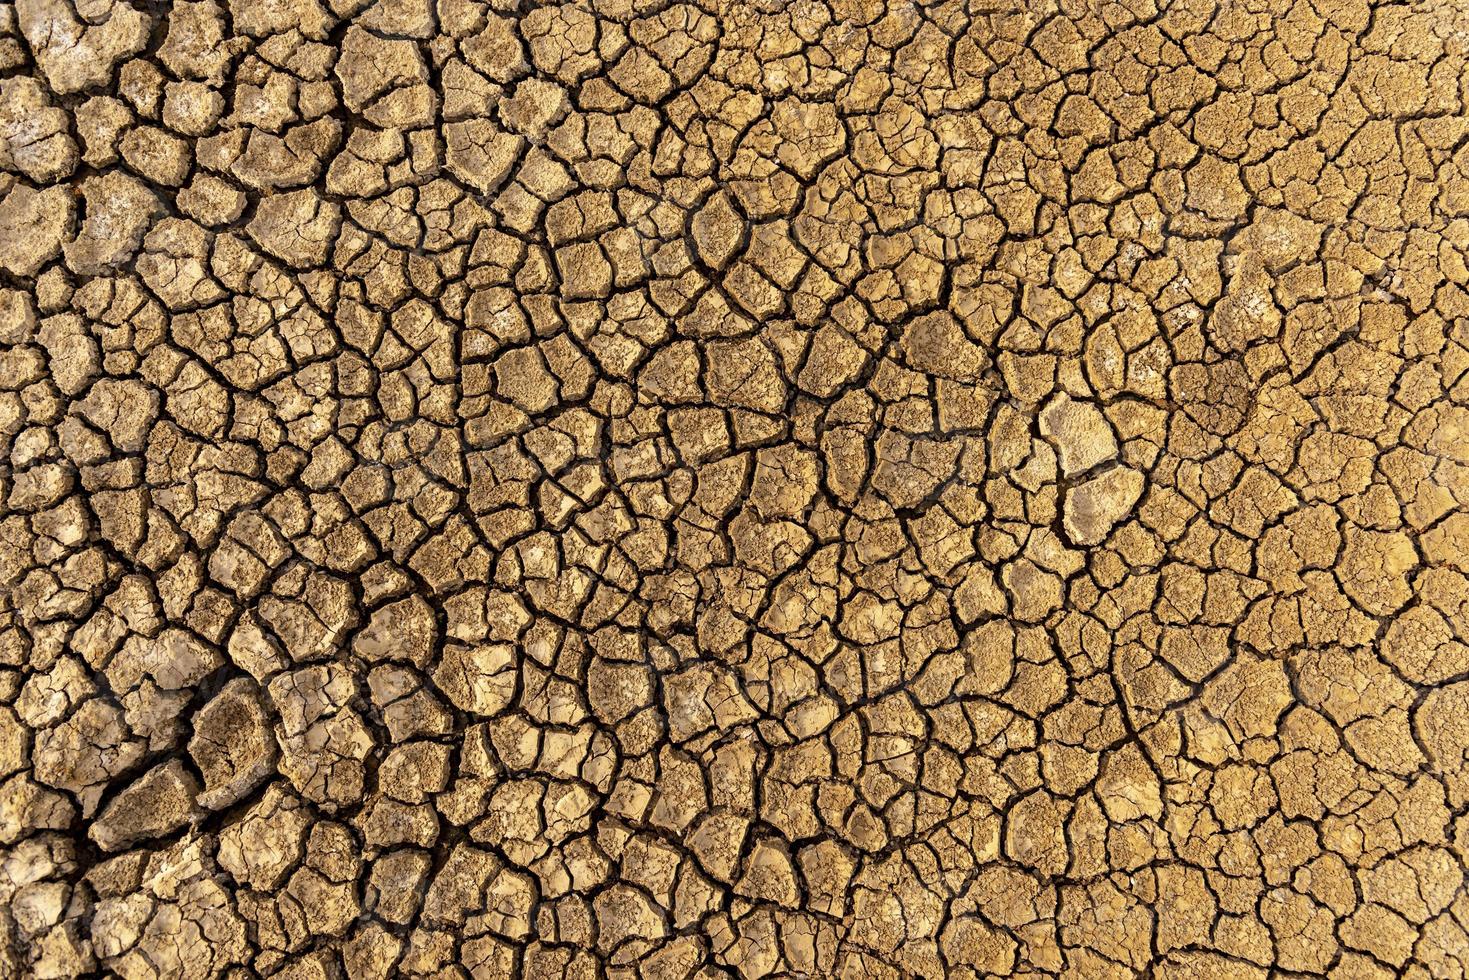 el concepto de sequía natural del medio ambiente en la tierra suelo seco, el suelo agrietado con erosión del suelo se vuelve rojo que no es agrícola foto